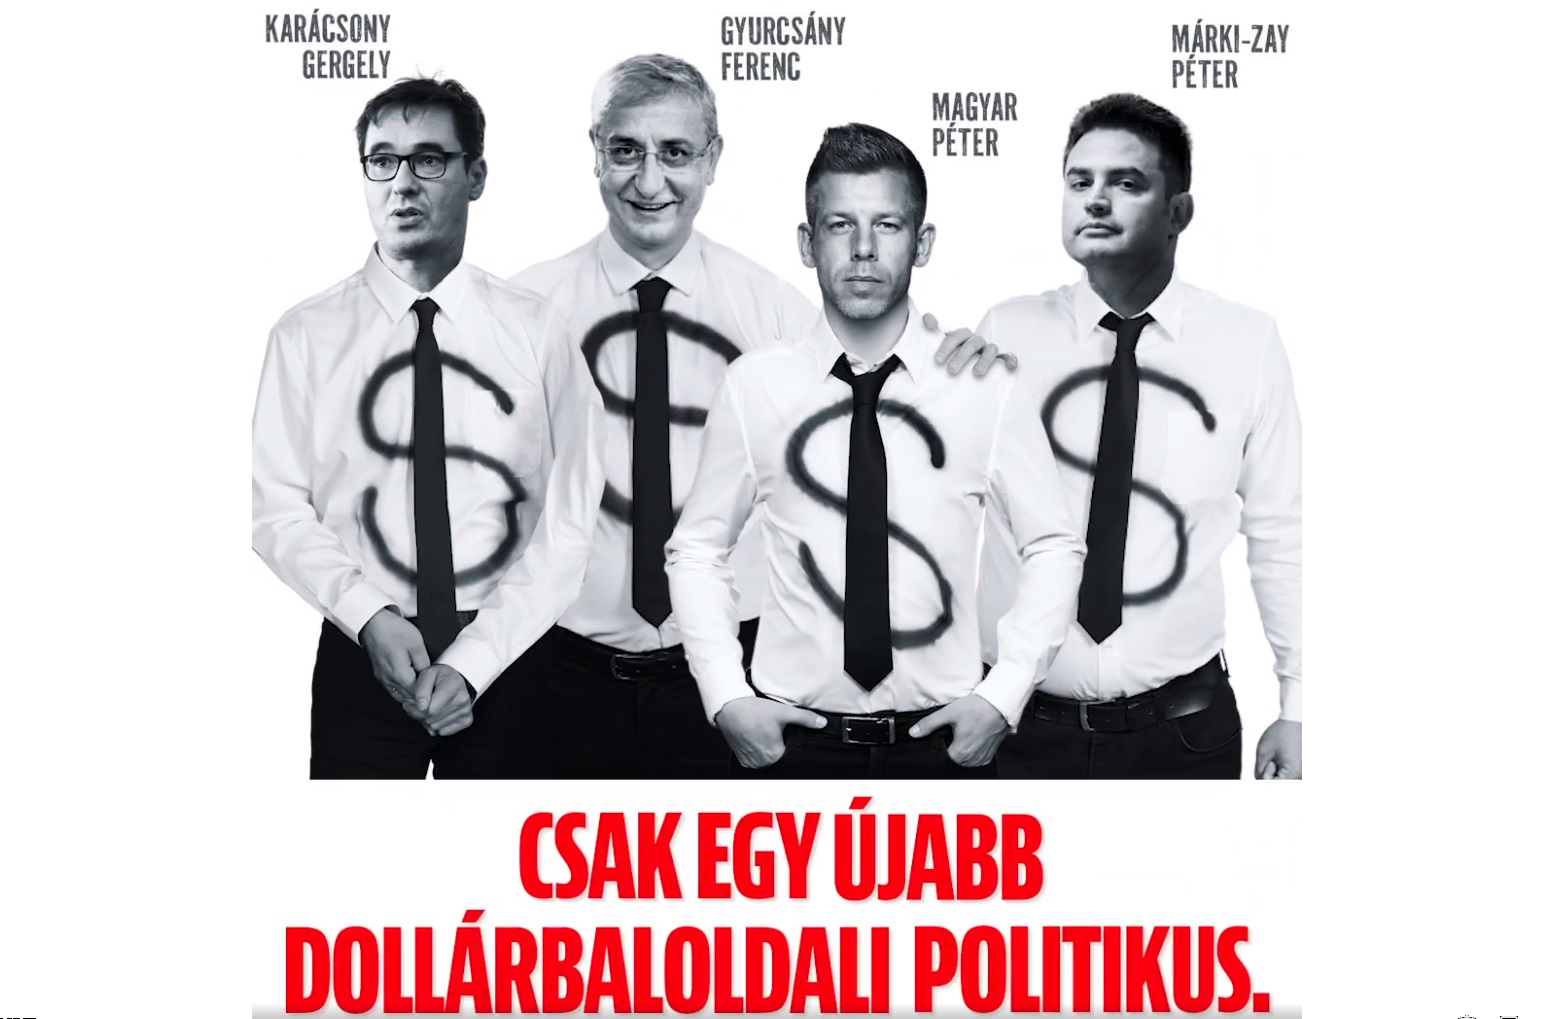 Rogán Antaltól minden kitelik – Magyar Péter reagált arra, hogy már őt is a dollárbaloldal részeként ábrázolják a CÖF plakátjain